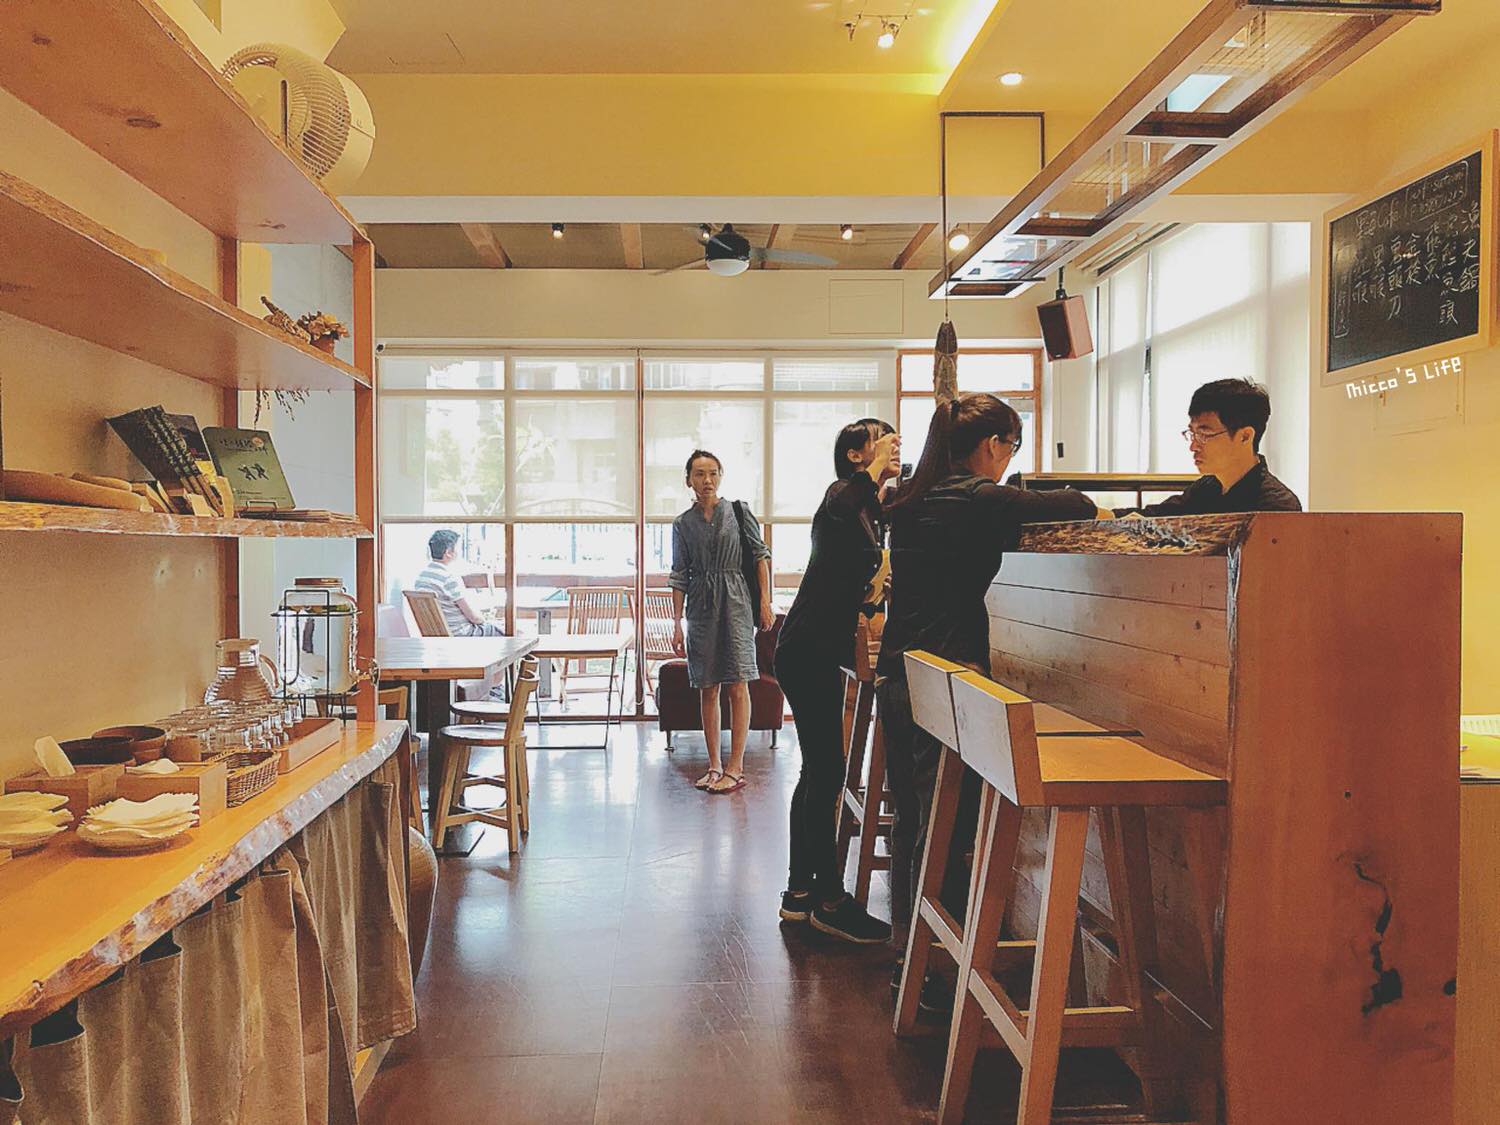 延伸閱讀：宜蘭美食．里海café│咖啡廳裡別有風格和滋味的「日式海魚定食」與「手作虎鰹魚漢堡排」